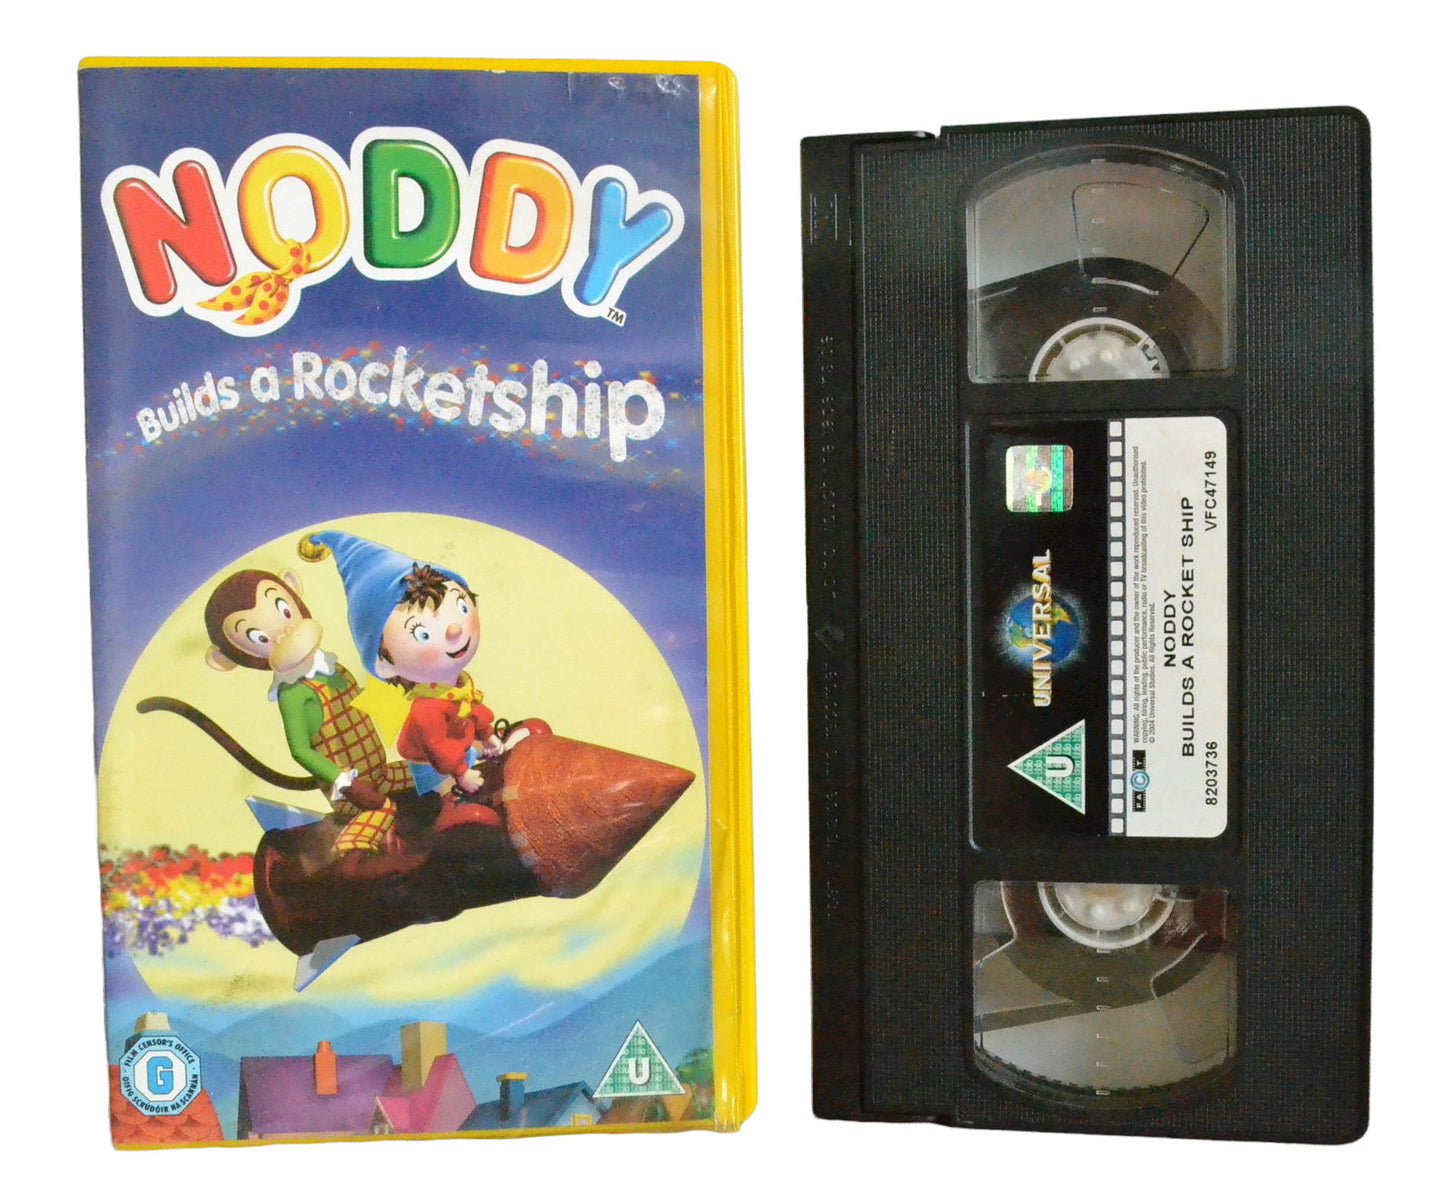 Noddy Builds A Rocketship - Universal - Children's - Pal VHS-